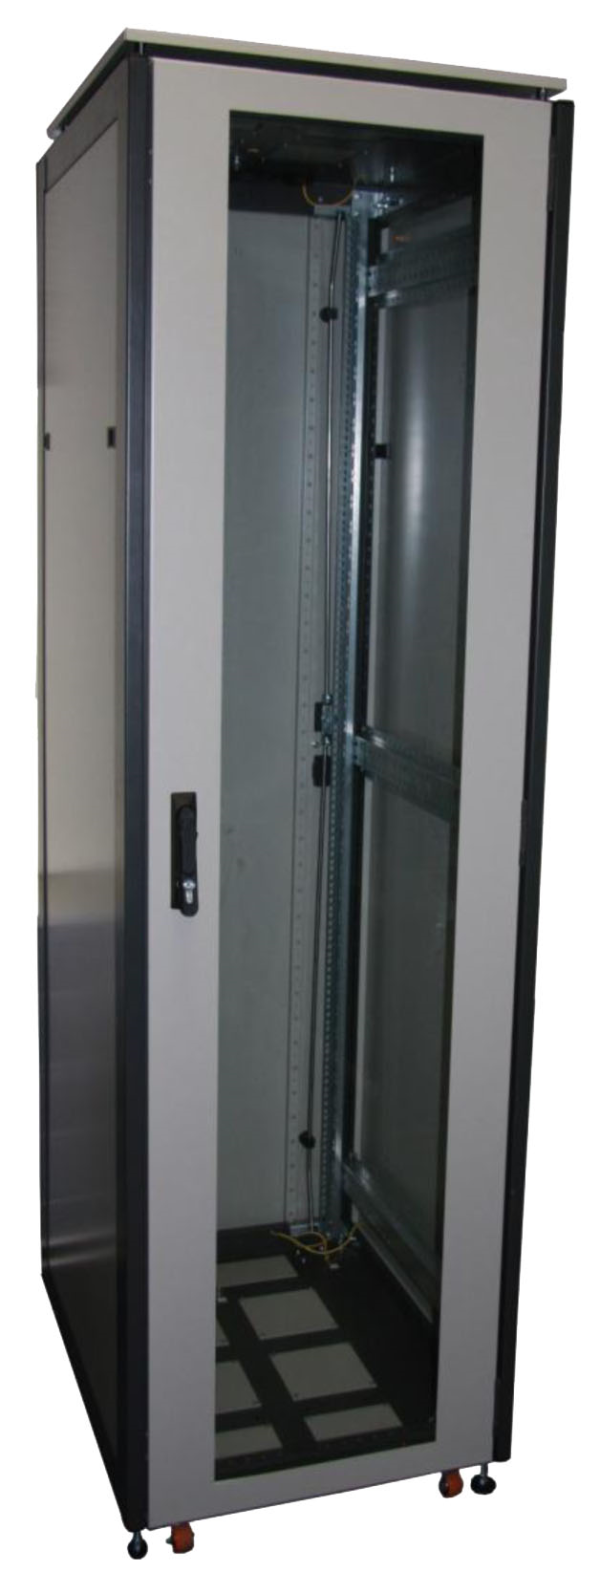 ССКТБ ТОМАСС ШТК-6812Э-03 - шкаф телекоммуникационный 19", 24U, 600х800х1200 мм, с двумя стеклянными дверьми